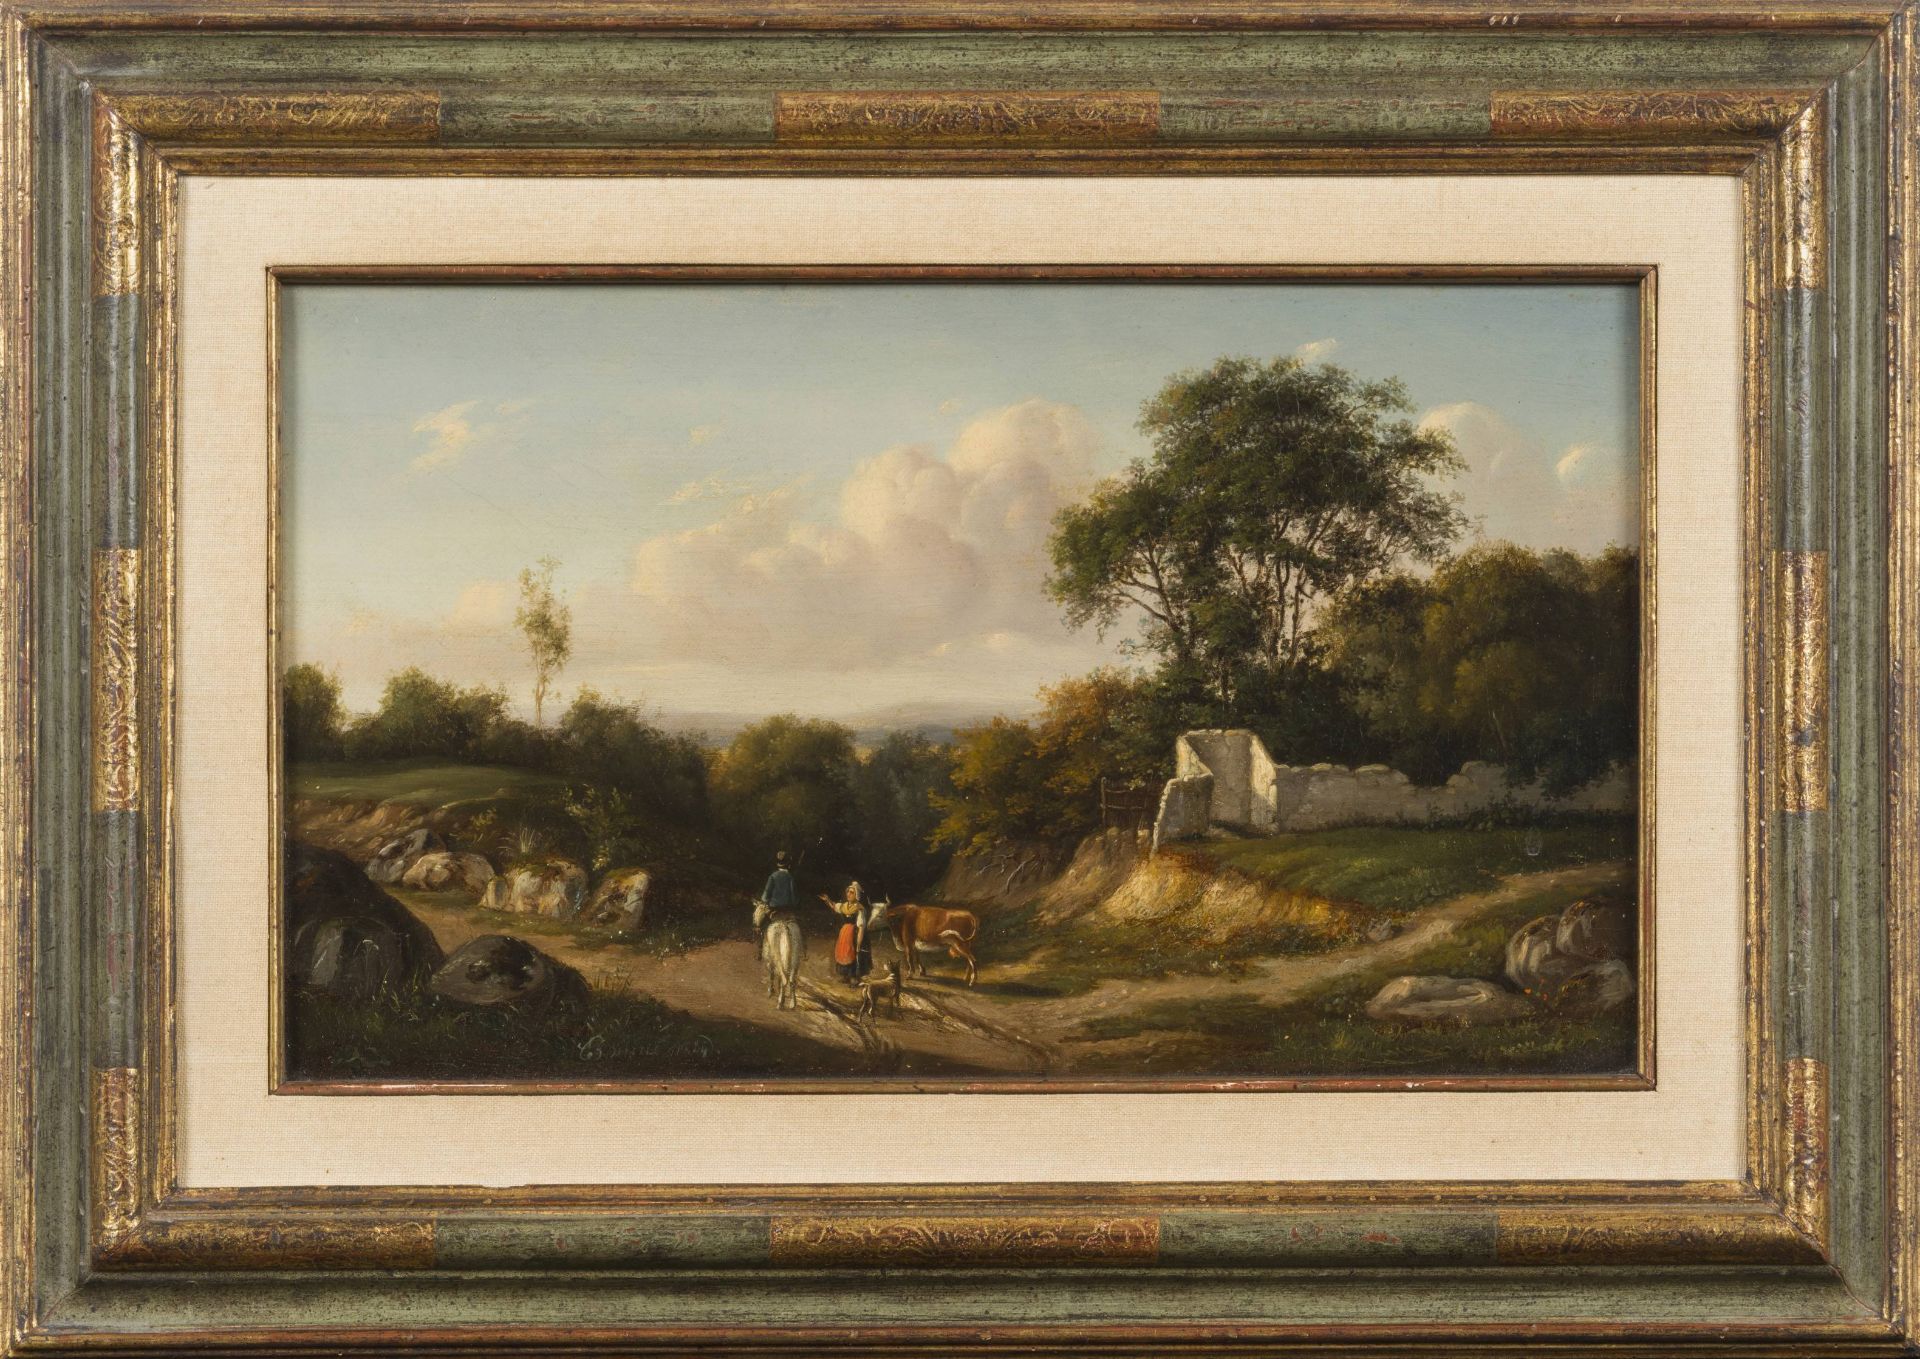 ECOLE FRANCAISE DU 19e SIECLE Paysage, 1844